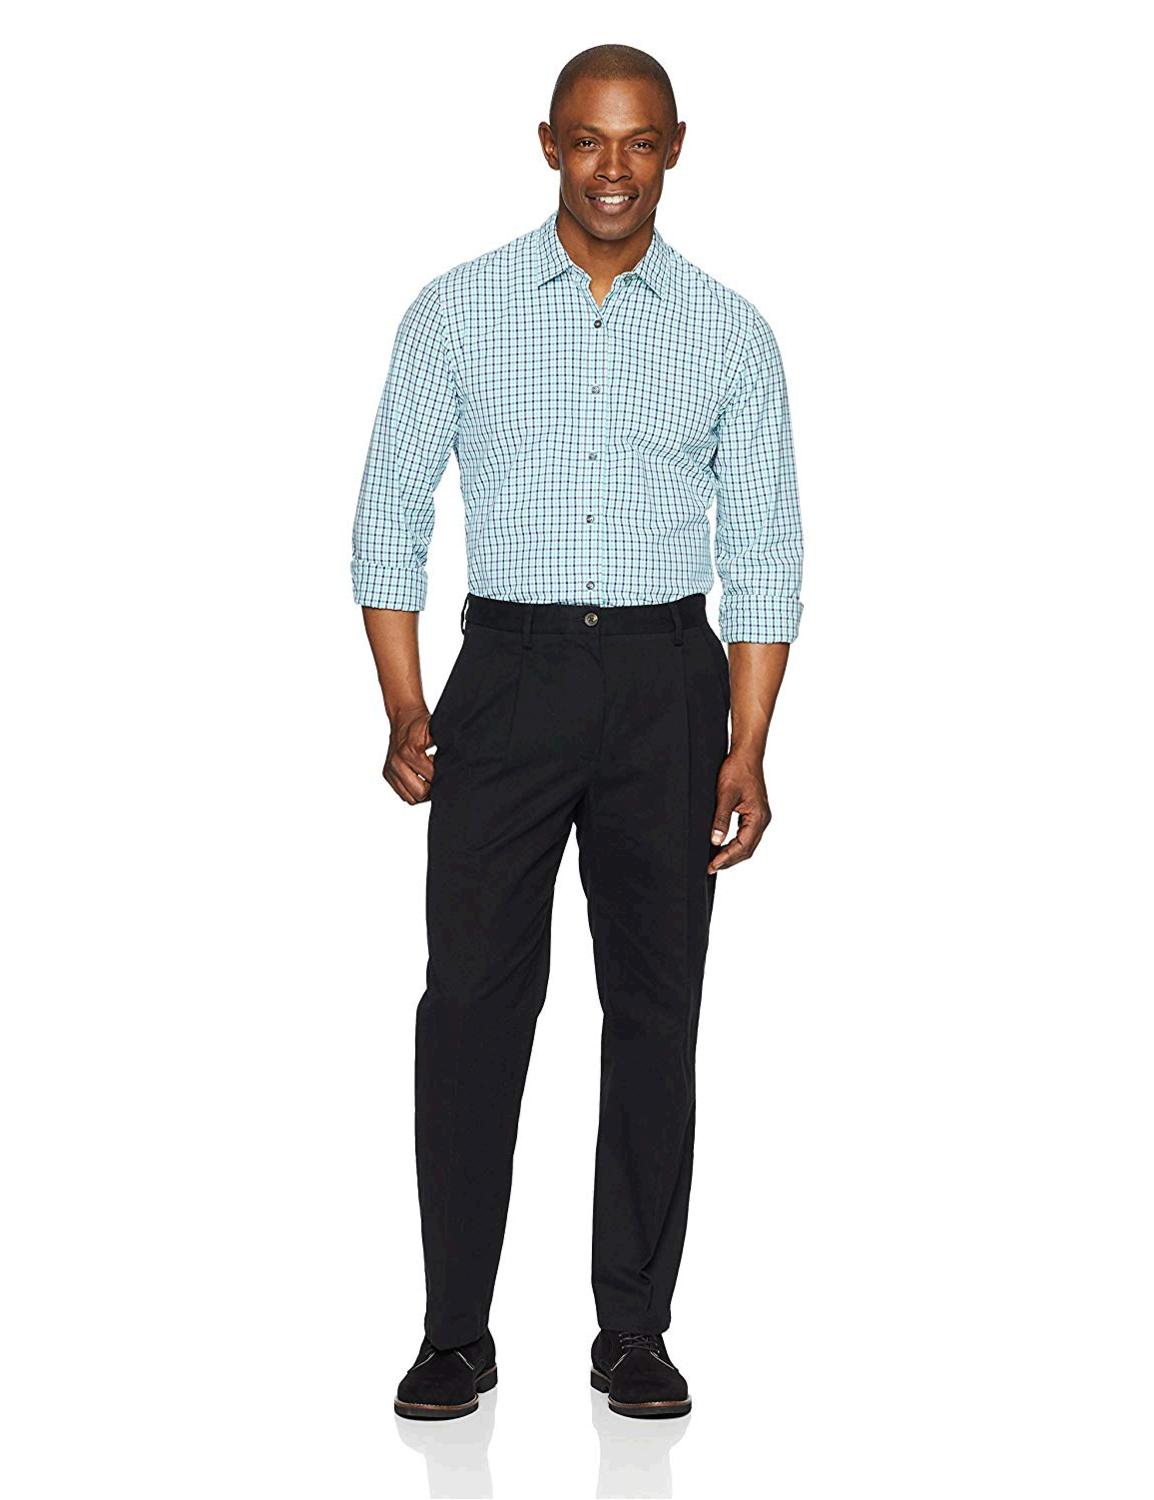 Essentials Men's Classic-Fit, True Black, Size 42W x 29L | eBay